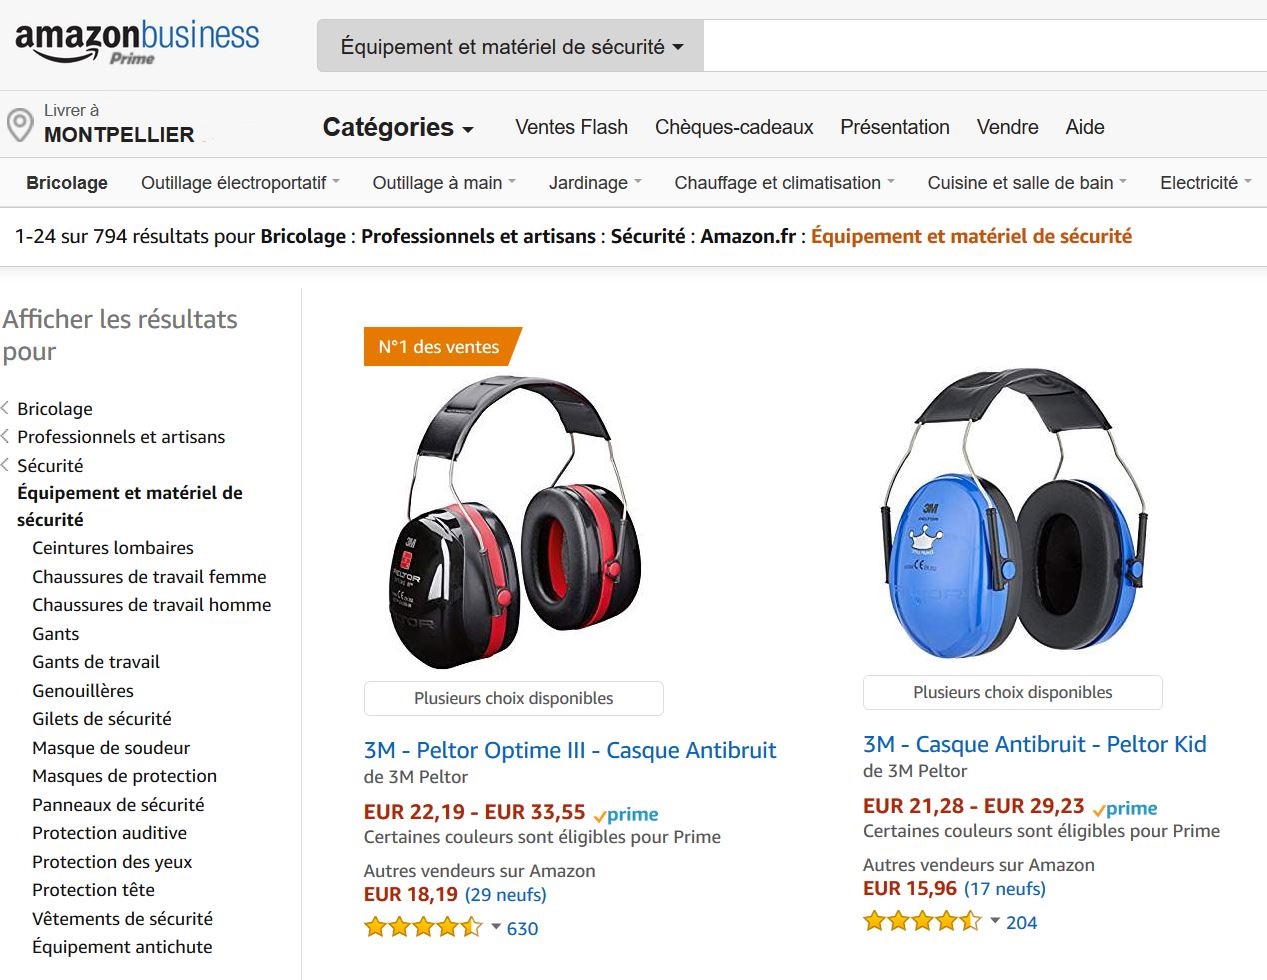 Amazon lance la section de matériel de sécurité